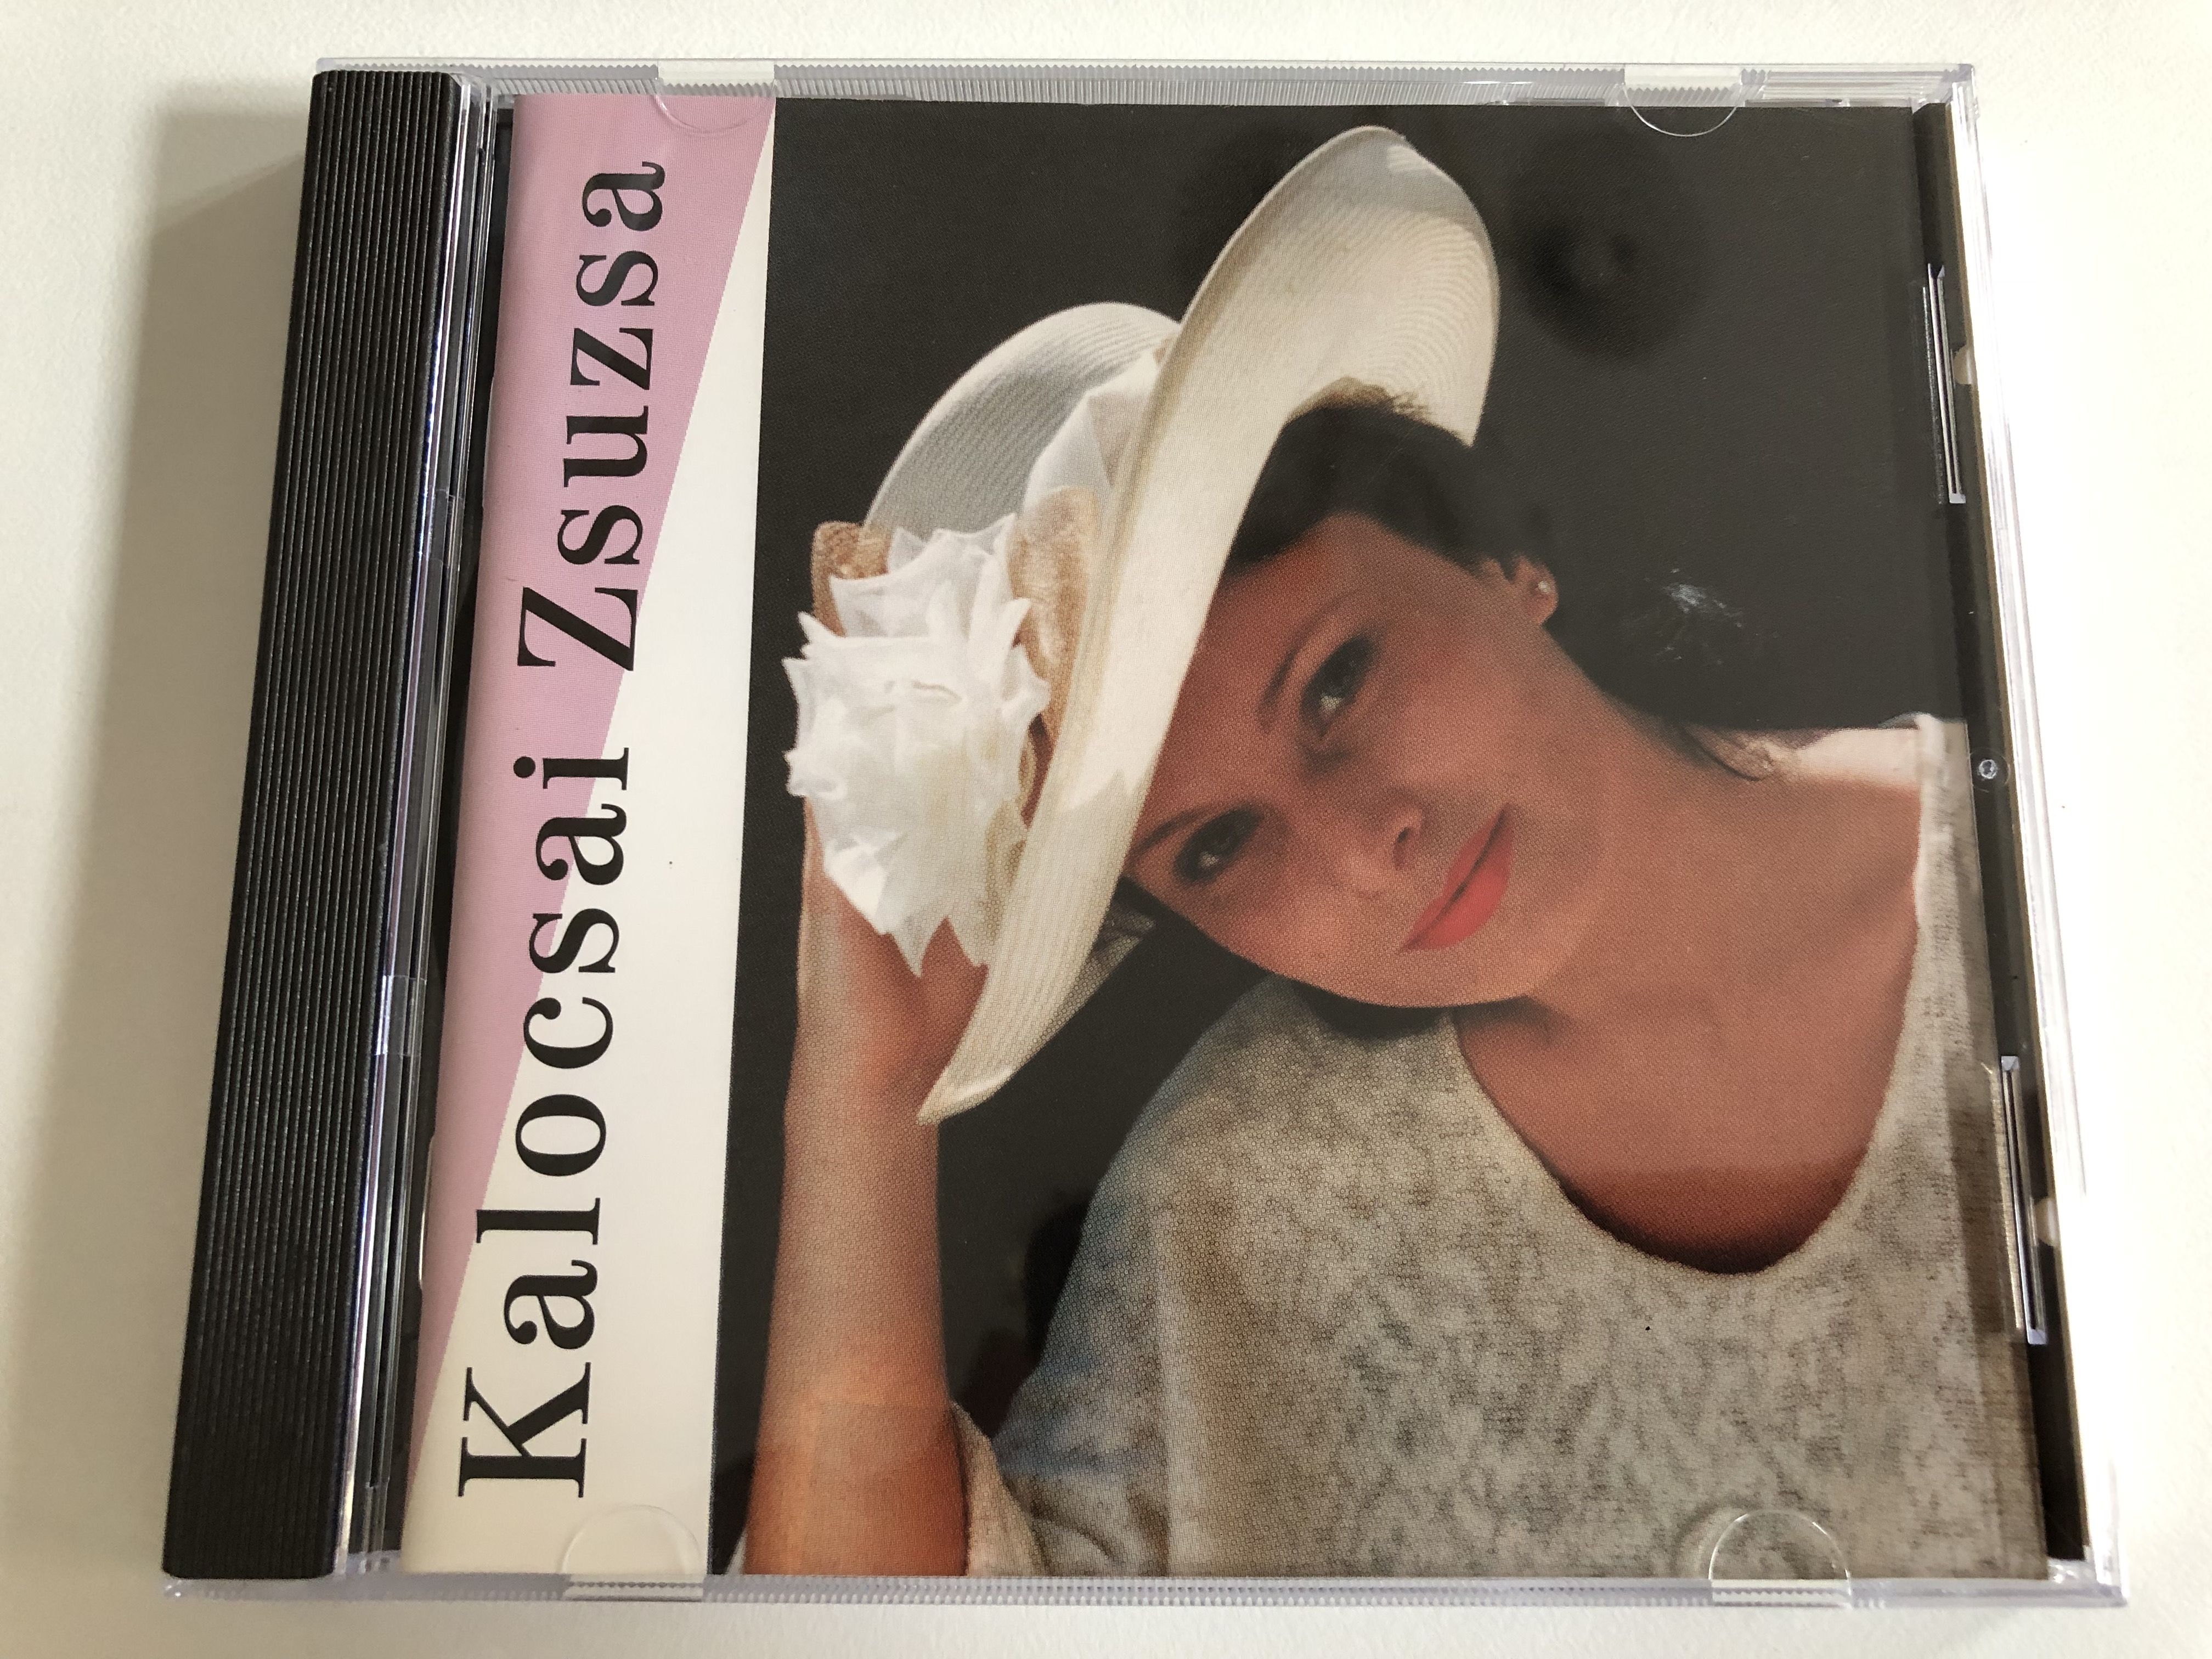 Kalocsai Zsuzsa / TonTeam Recording Audio CD 1995 / A Fovarosi Operett  Szinhaz Zenekara - Bible in My Language